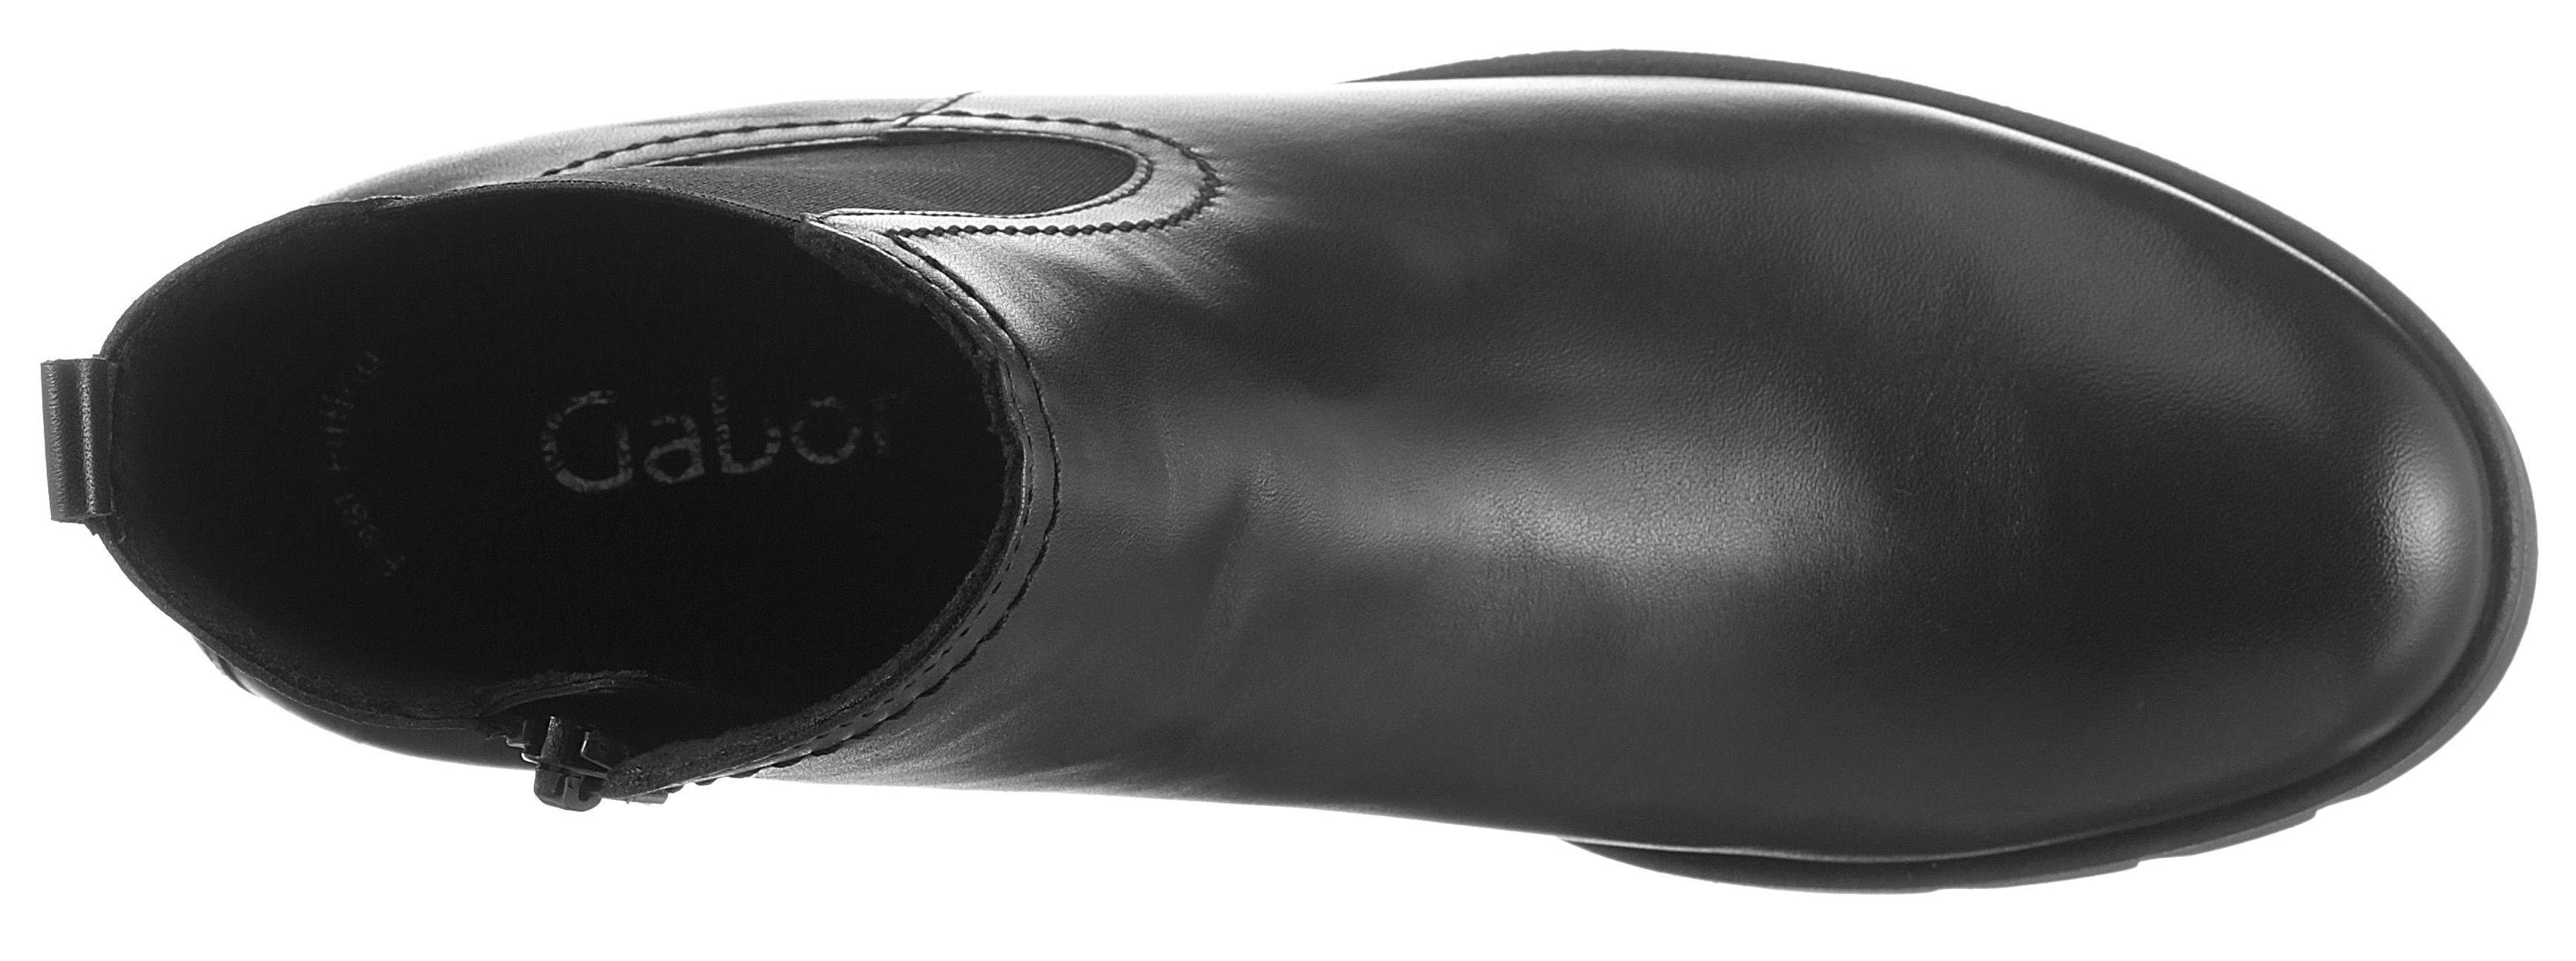 Gabor Chelseaboots mit Profilsohle schwarz angesagter